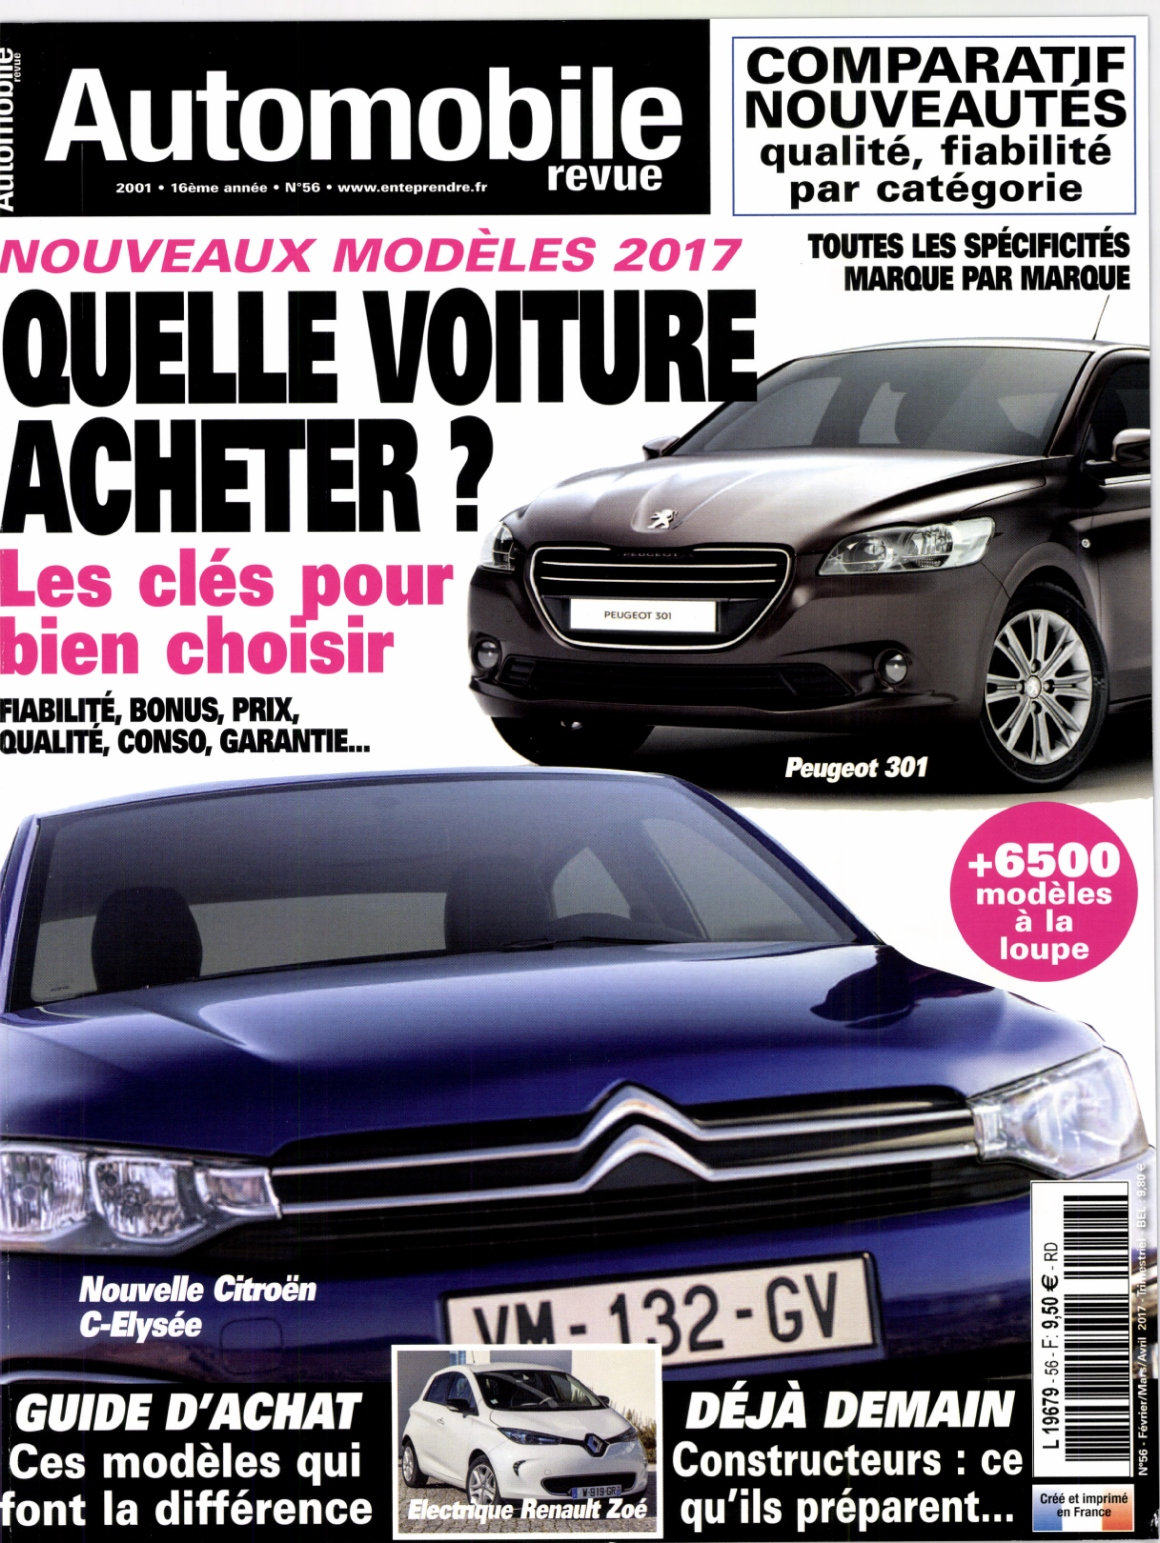 Automobile revue N°56 - Février/Avril 2017 